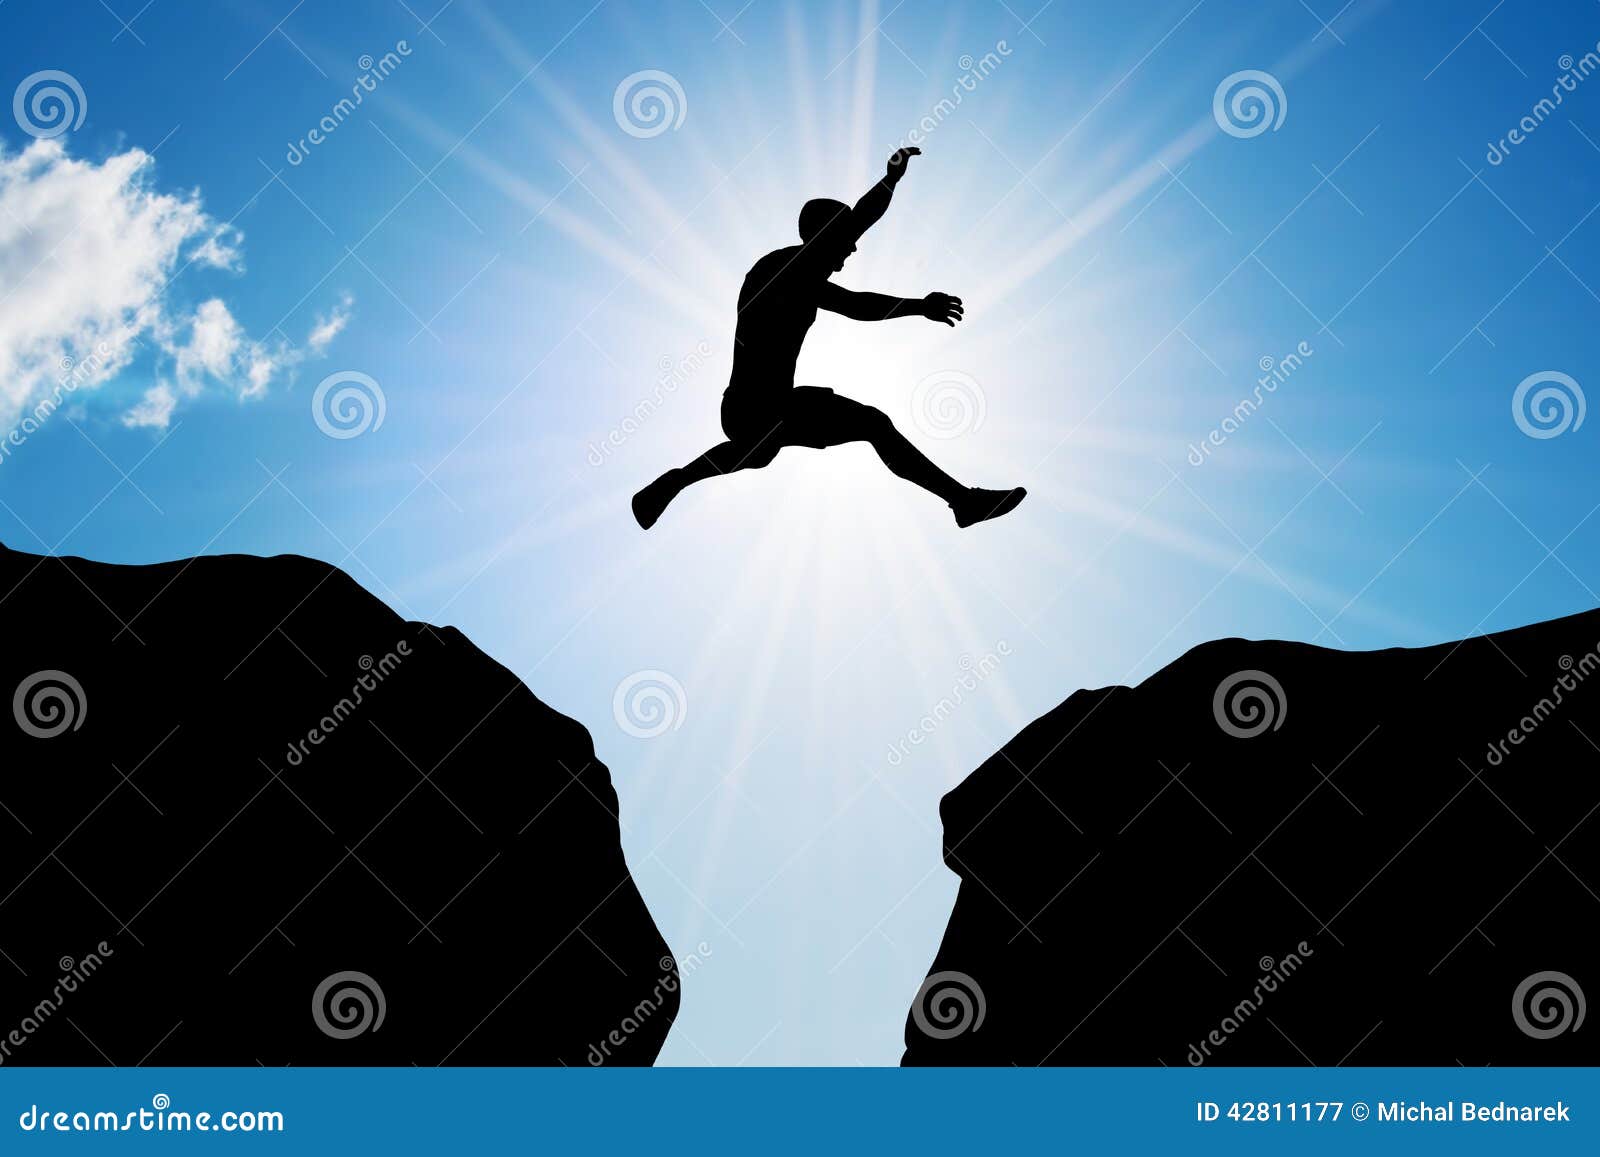 O homem que salta sobre o precipício Risco, desafio, sucesso. Equipe o salto sobre um precipício entre duas montanhas rochosas na luz do sol Liberdade, risco, desafio, sucesso